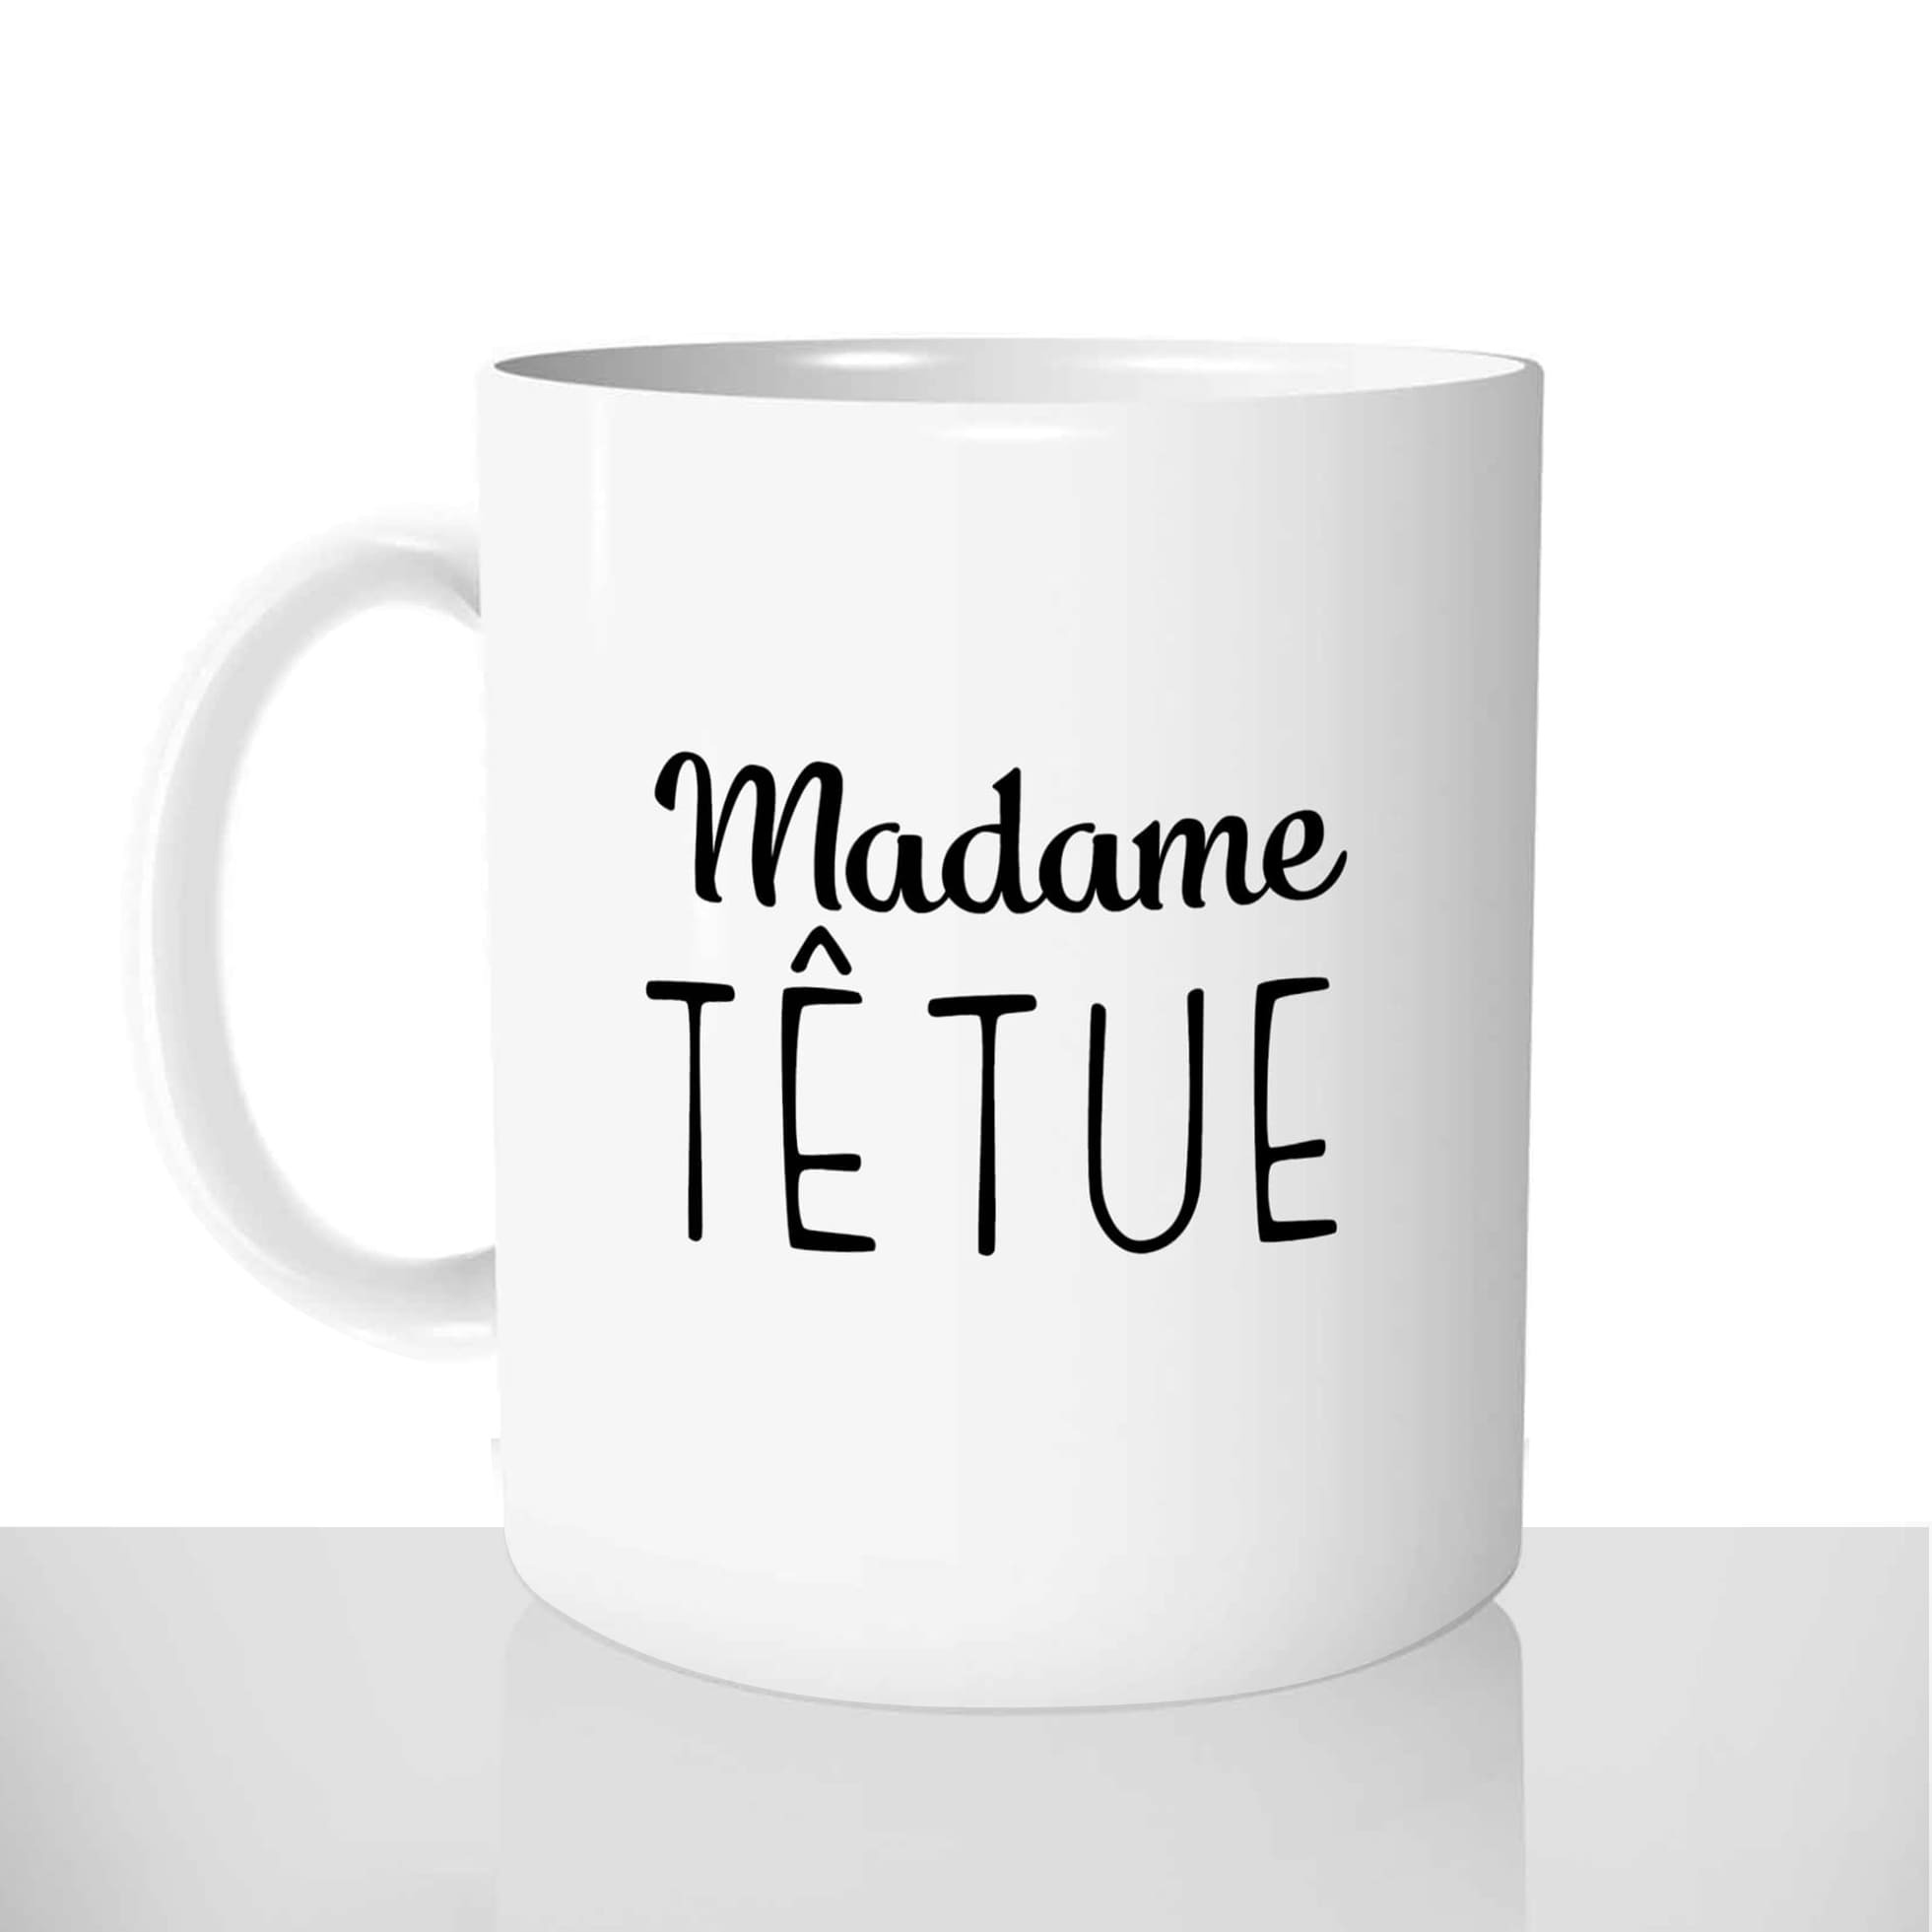 mug classique en céramique 11oz personnalisé personnalisation photo madame tetue collegue copine personnalisable offrir cadeau chou